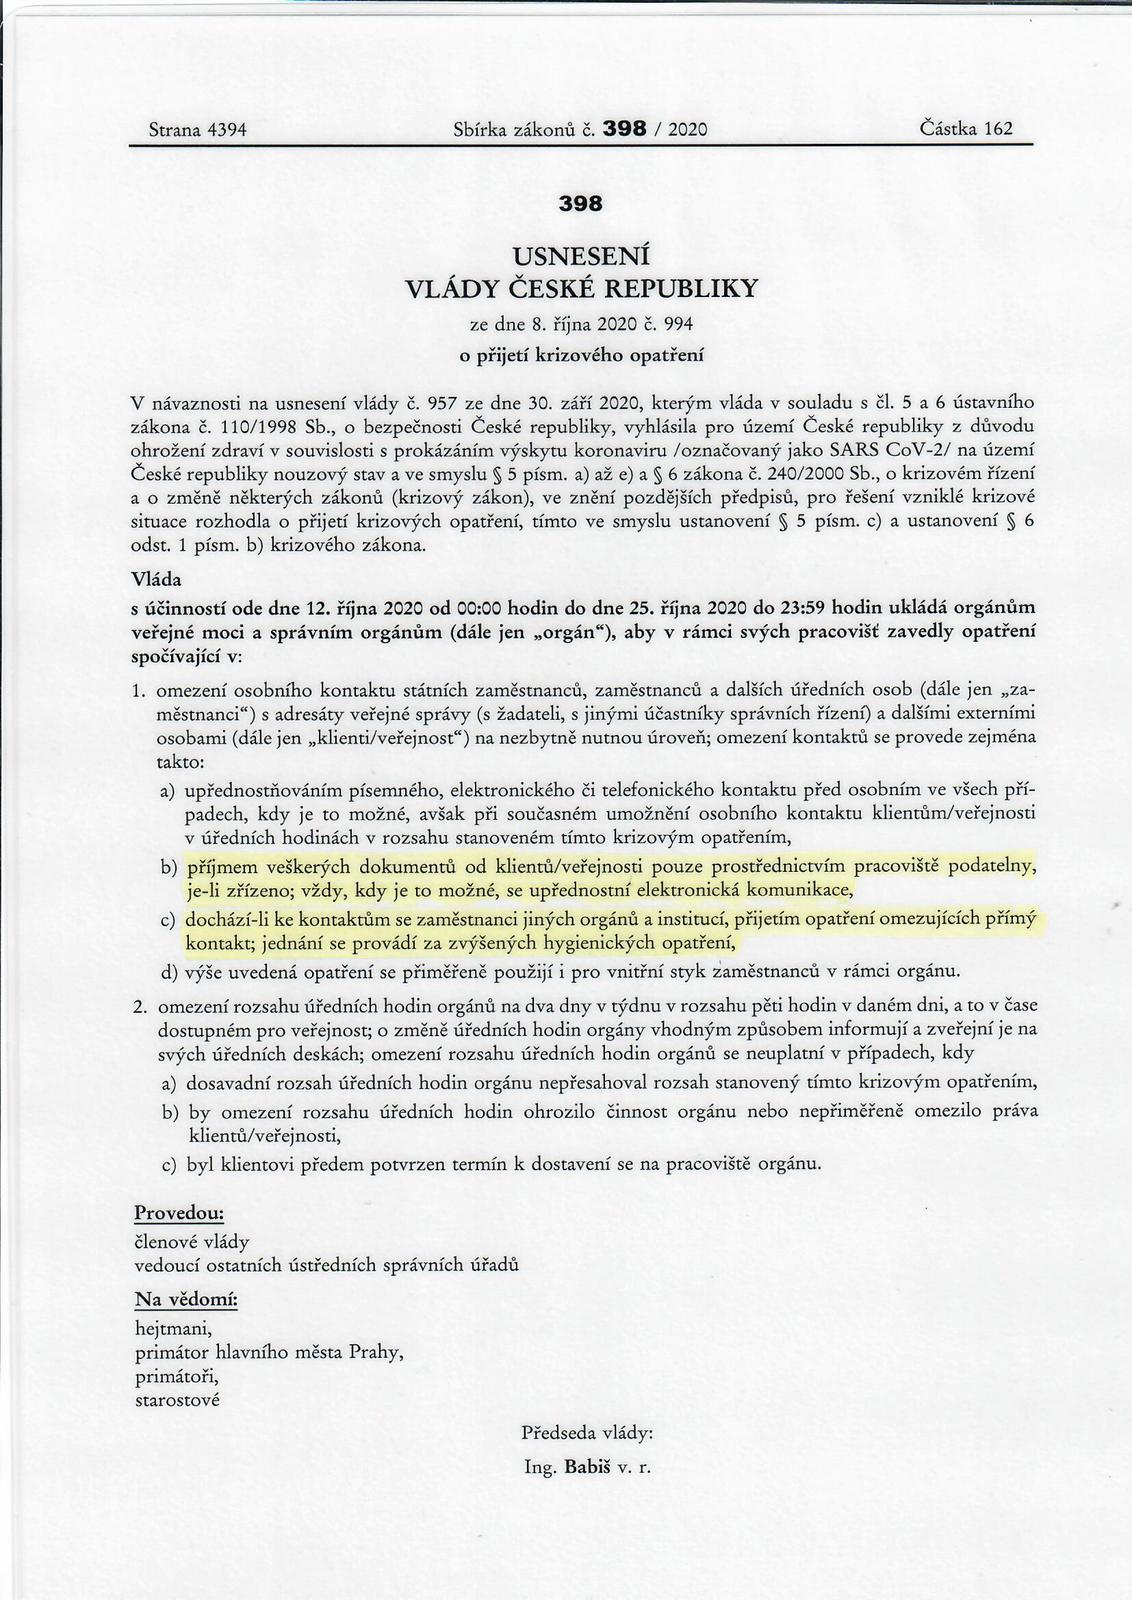 Usnesení vlády České republiky o přijetí krizového opatření.jpg